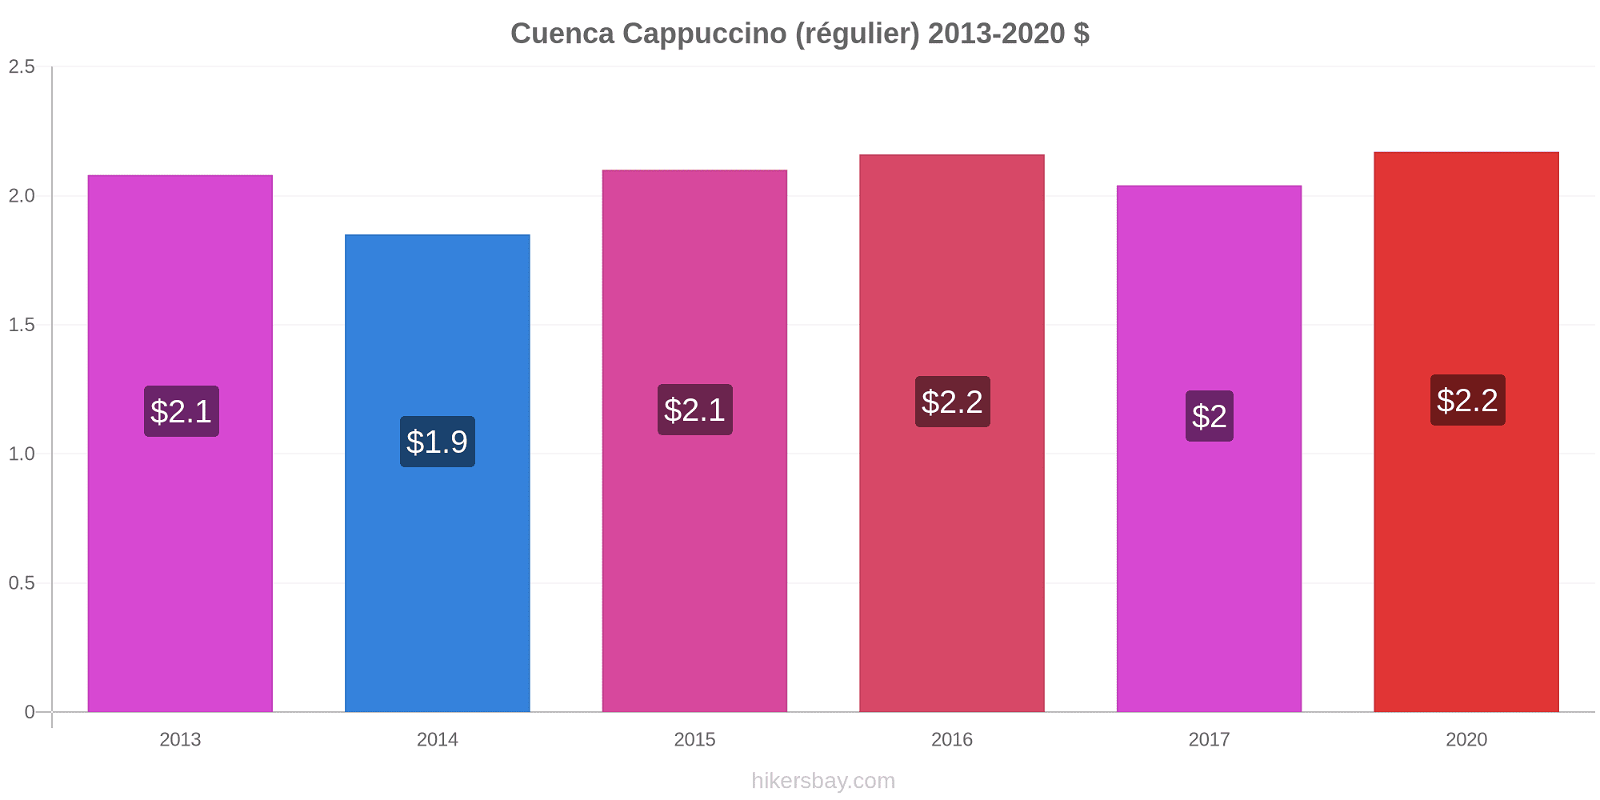 Cuenca changements de prix Cappuccino (régulier) hikersbay.com